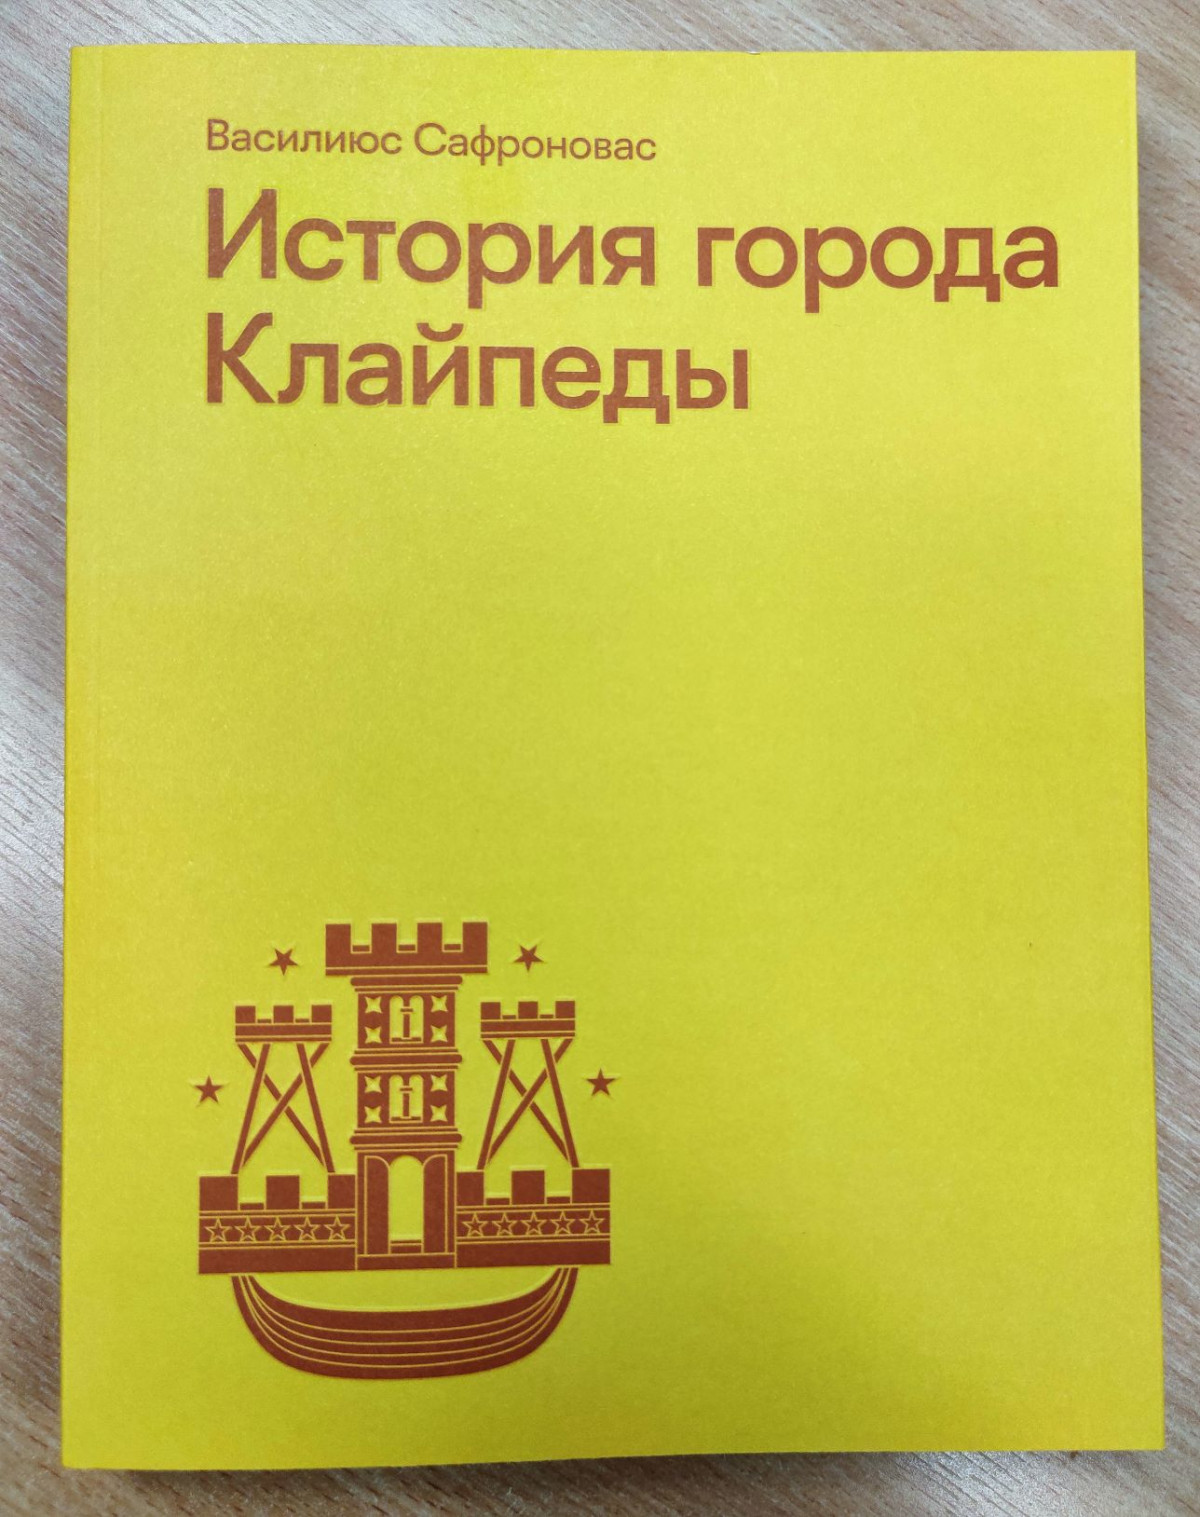 Populiariausia 2021-ųjų Klaipėdos knyga „Klaipėdos miesto istorija“ išleista ir rusų kalba